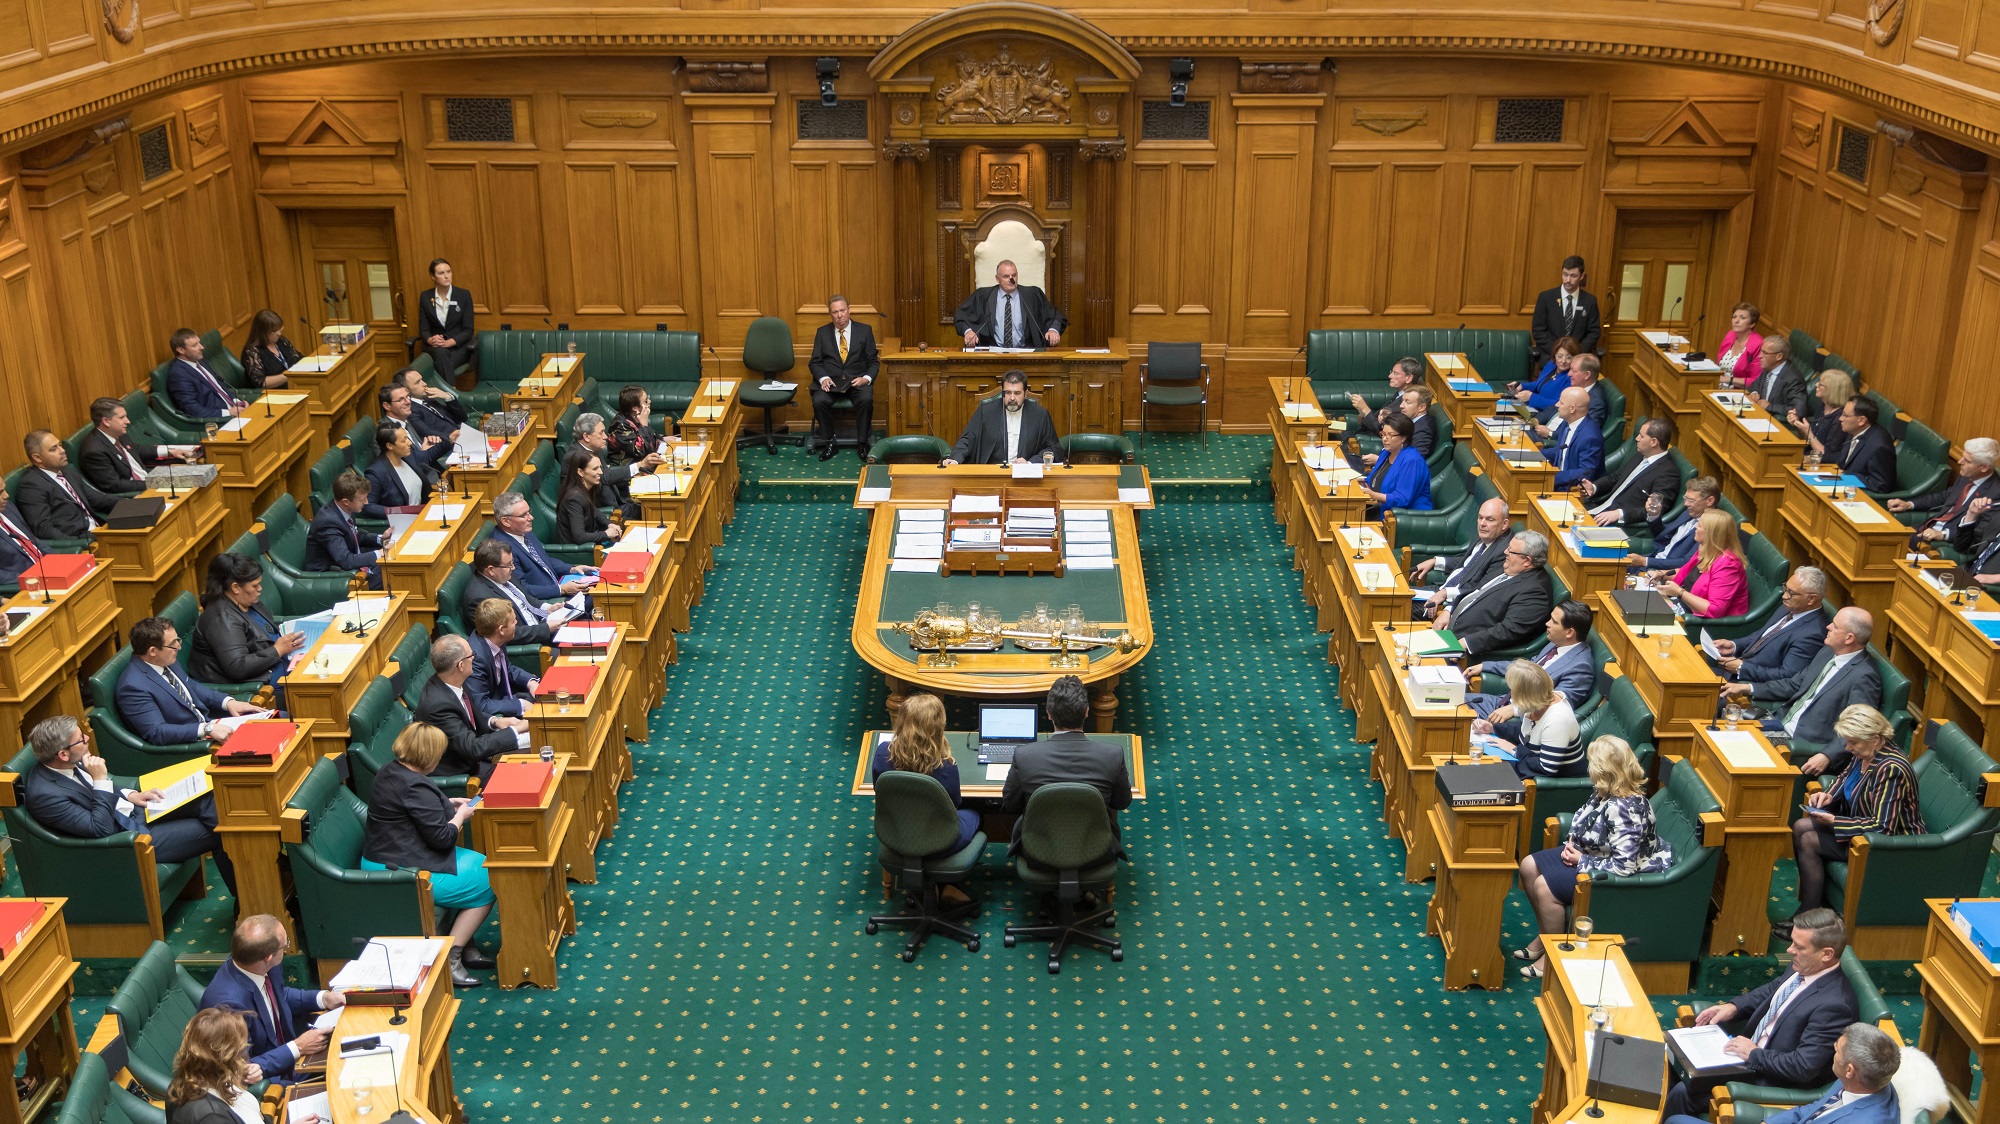 Органы государственной власти парламент. Однопалатный парламент новой Зеландии. Правительство новой Зеландии. Парламент Бразилии здание парламента. Палата представителей новой Зеландии.